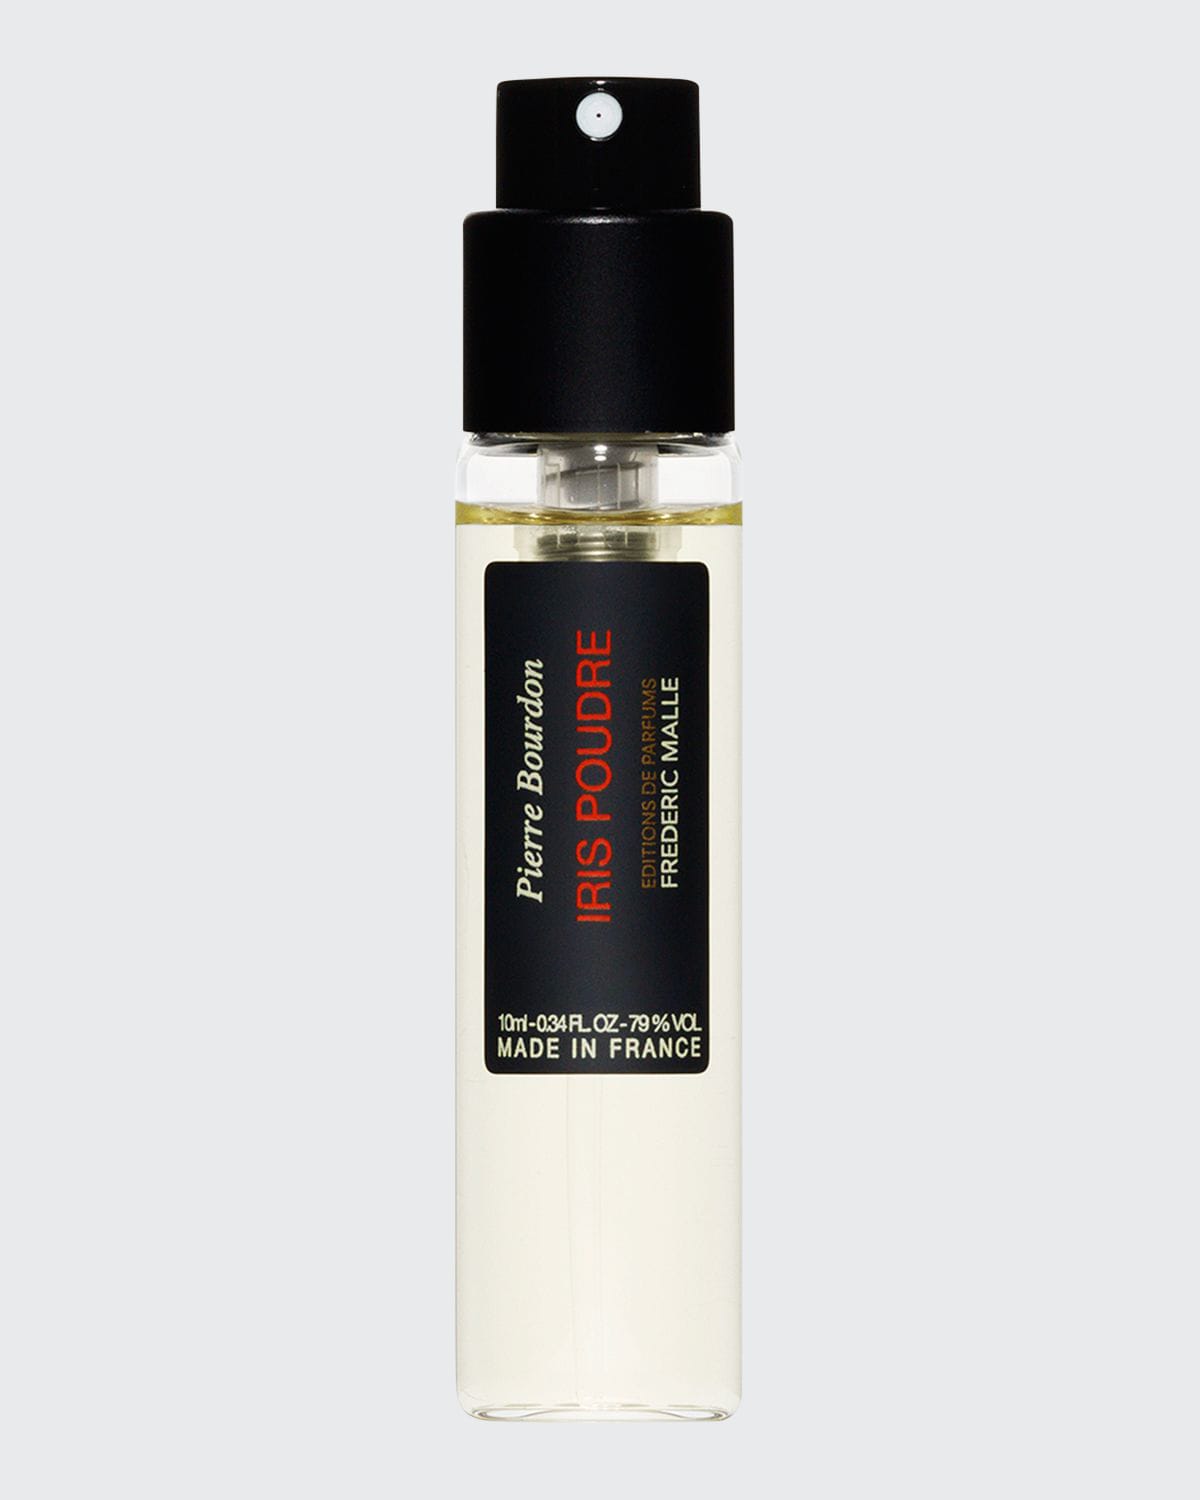 Frederic Malle Iris Poudre Travel Perfume Refill, 0.3 oz./ 10 mL